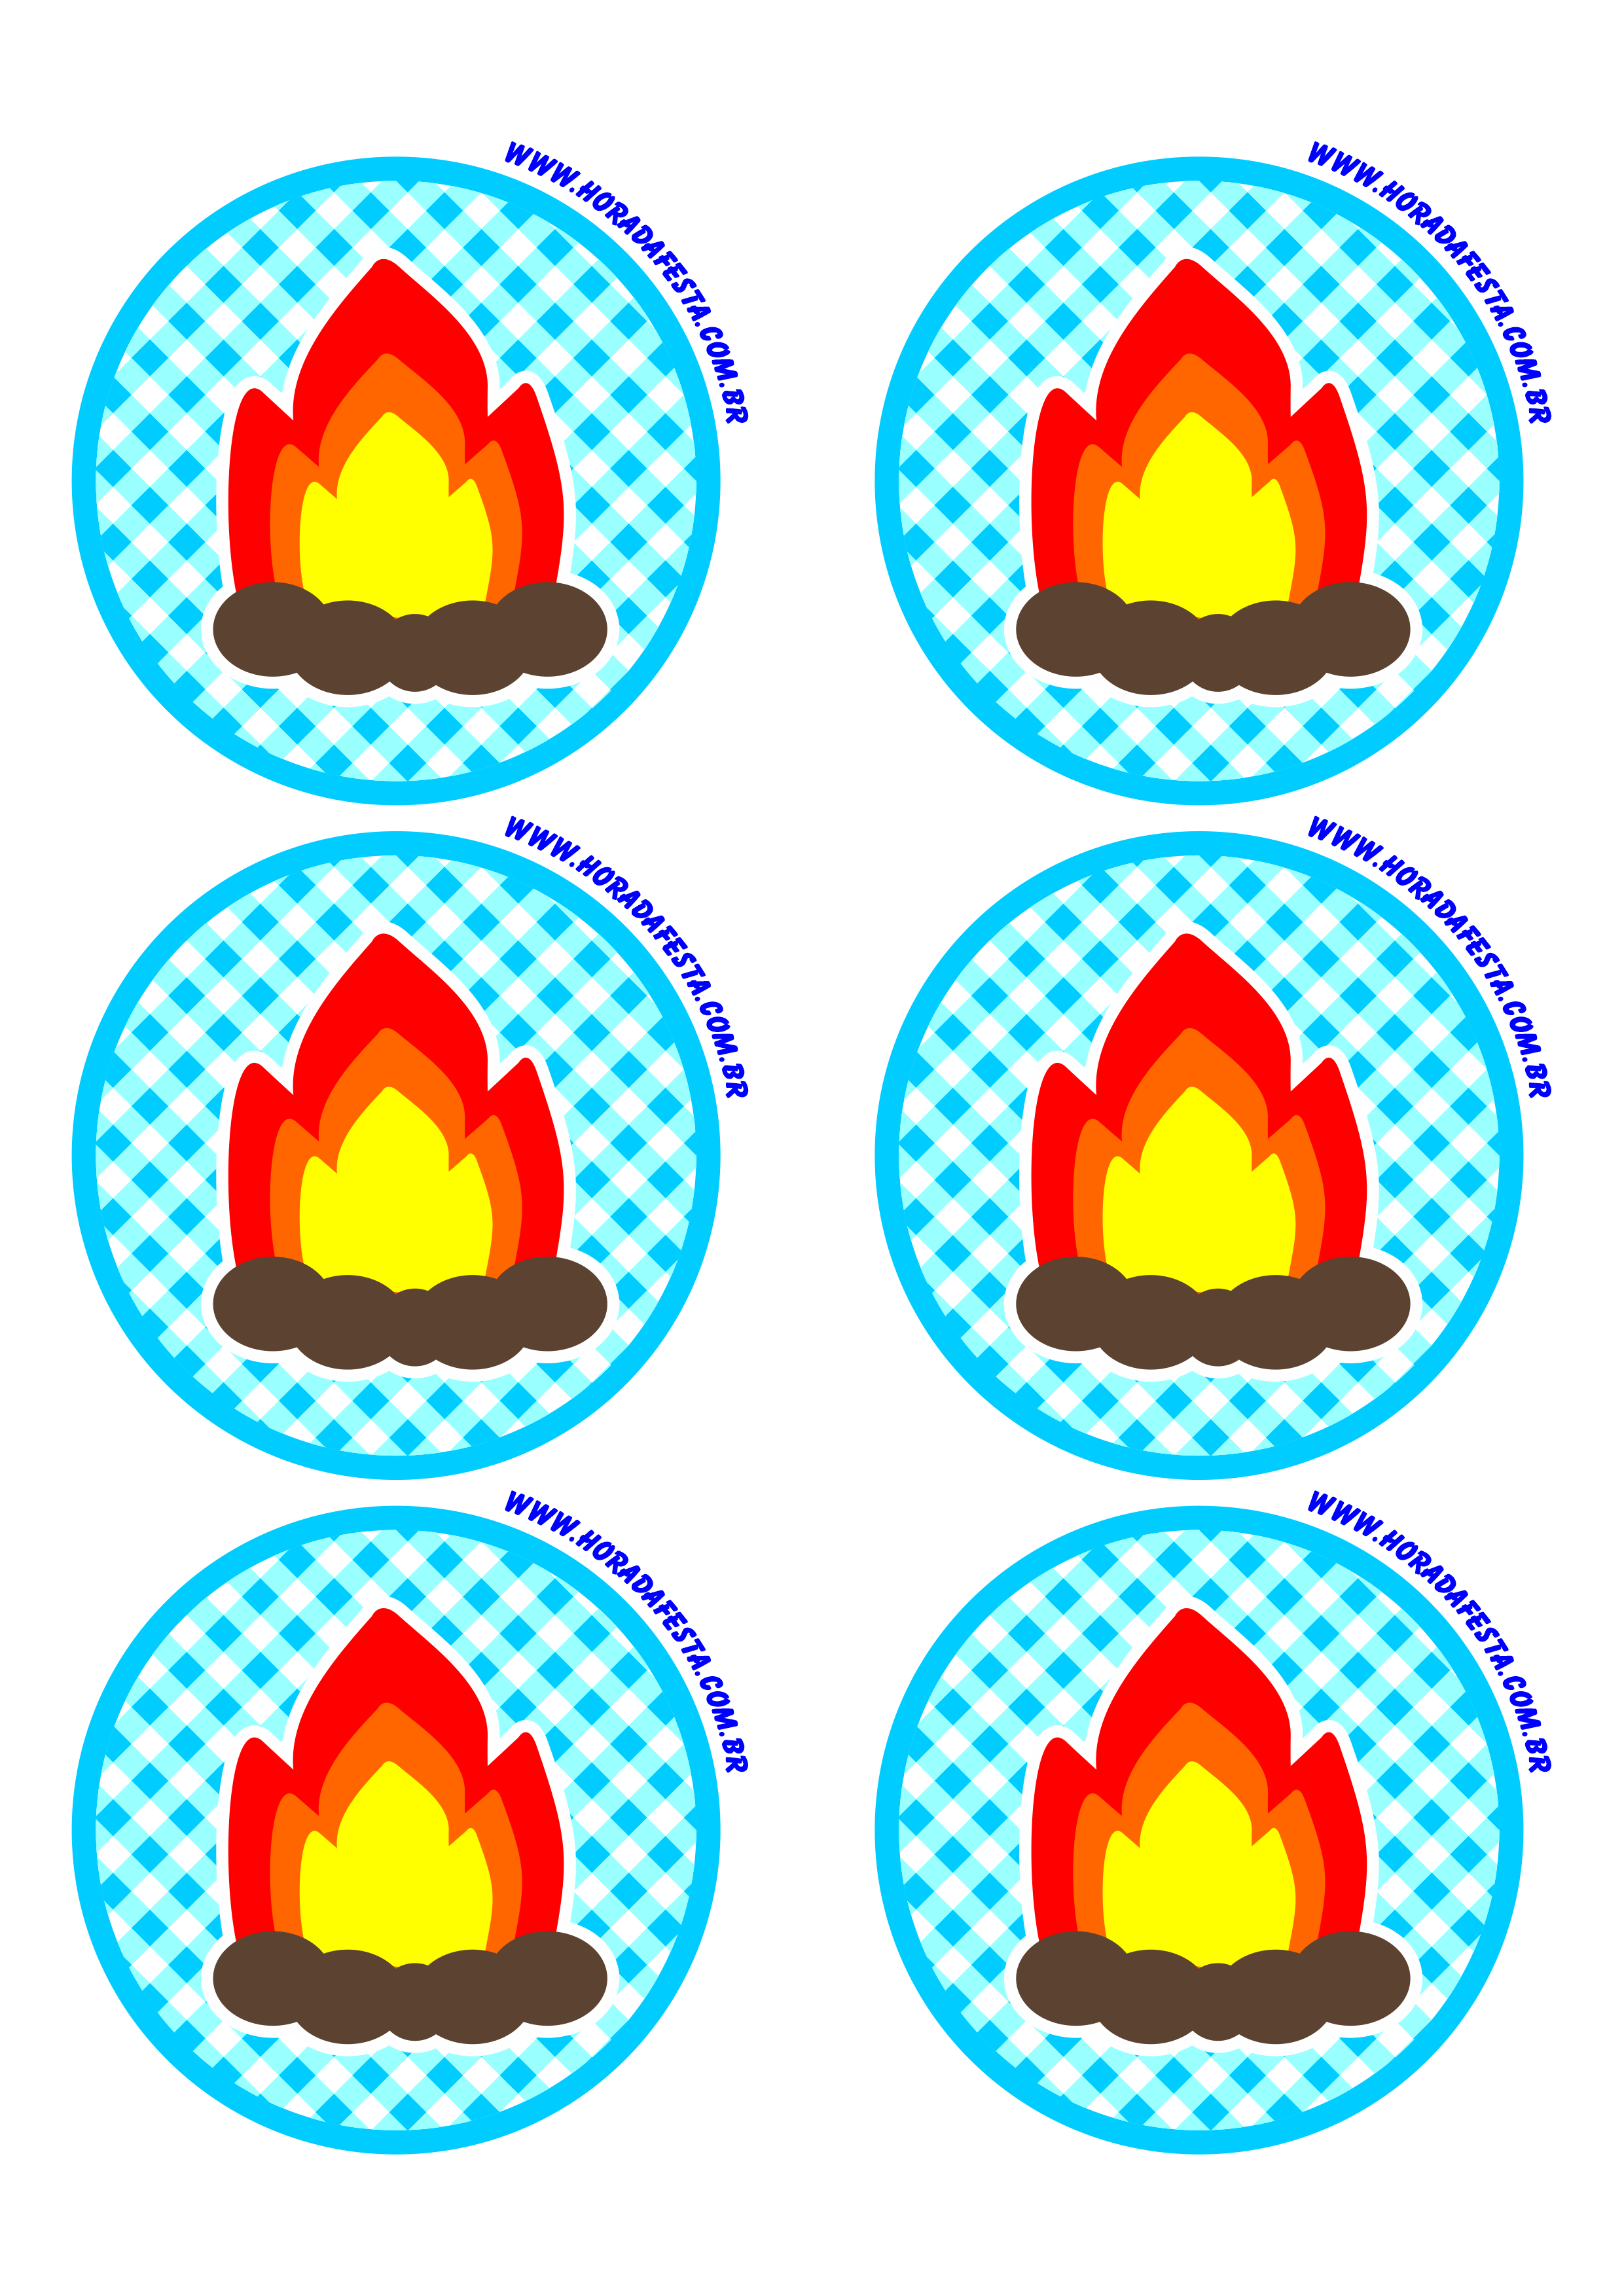 Festa junina logo adesivo redondo tag sticker azul fogueira de são joão 6 imagens png